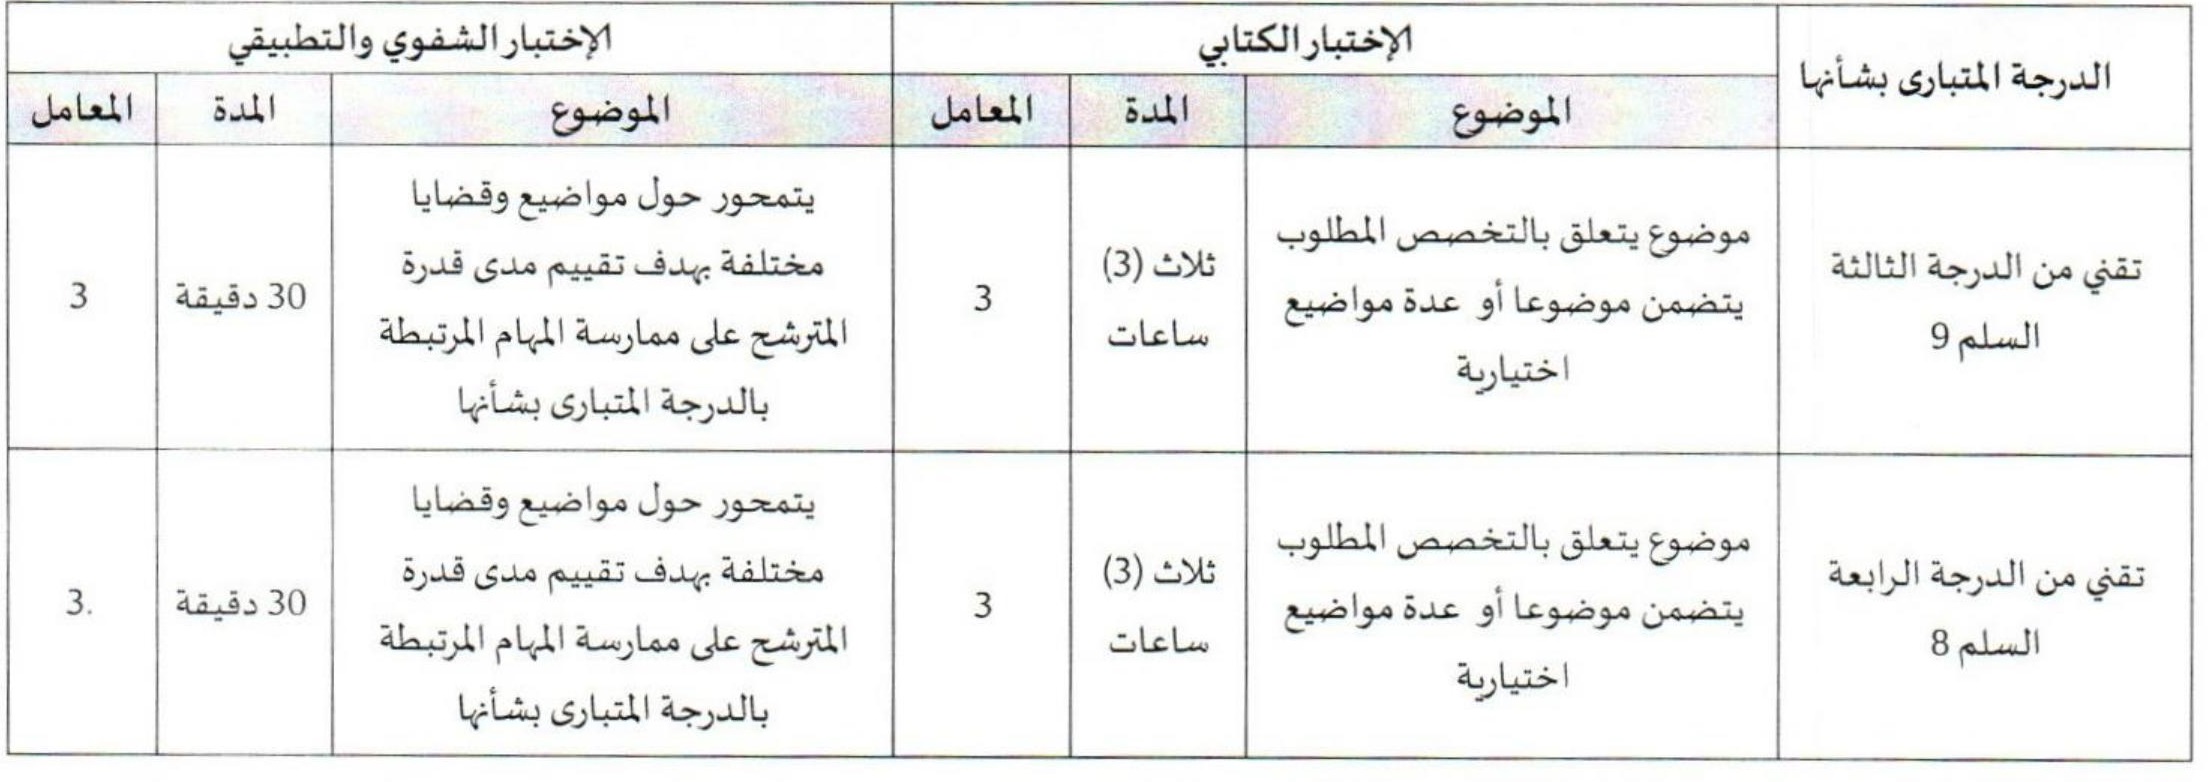 جماعة سيدي رضوان مباراة توظيف 5 مناصب آخر أجل هو 4 أكتوبر 2022